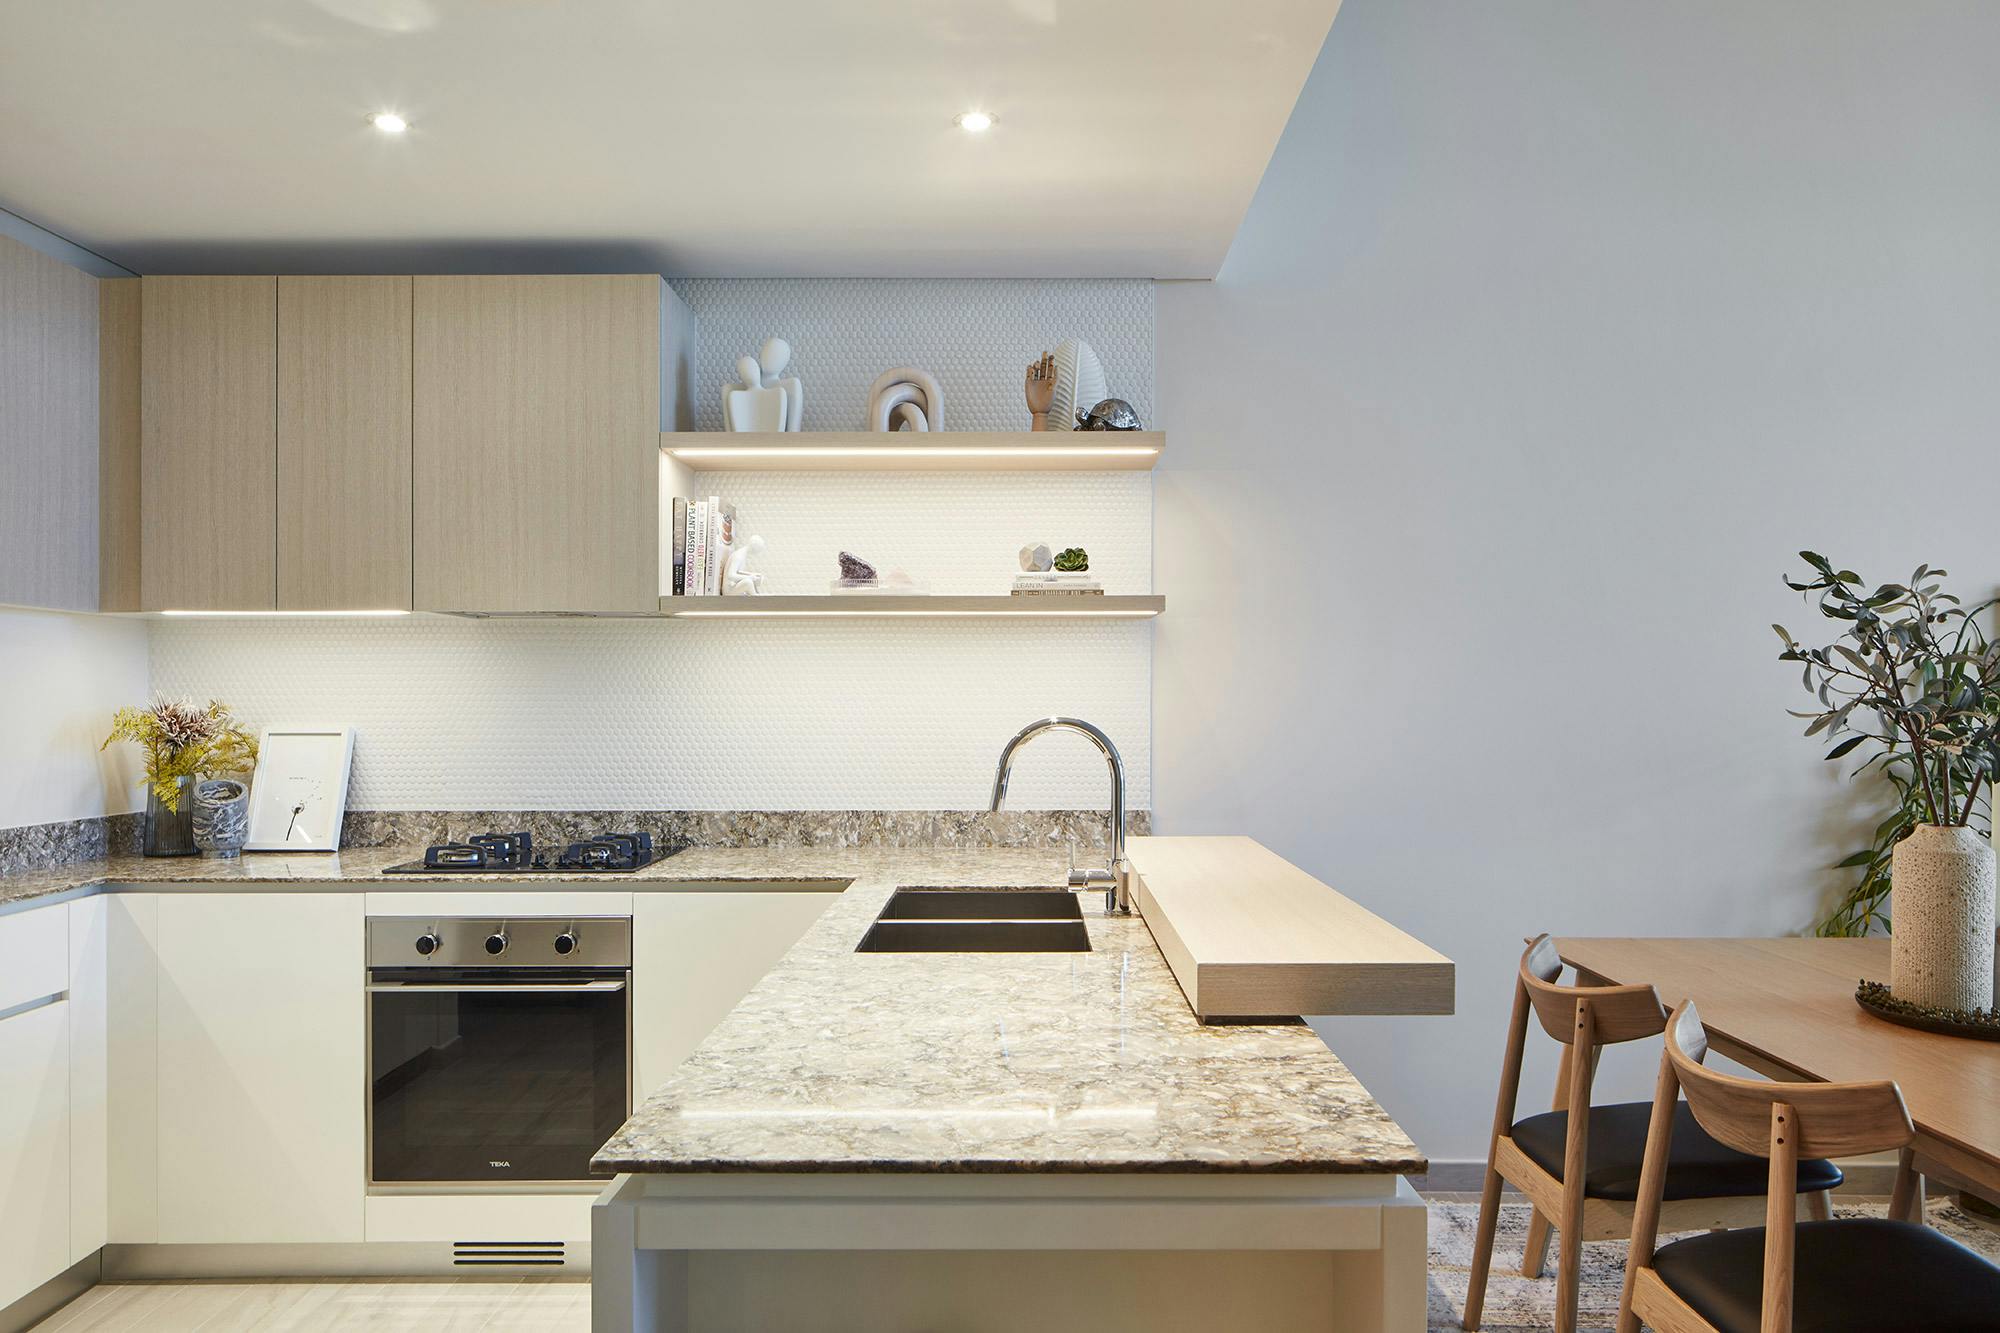 Bildnummer 37 des aktuellen Abschnitts von High-end homes with a modern design and durable materials von Cosentino Deutschland